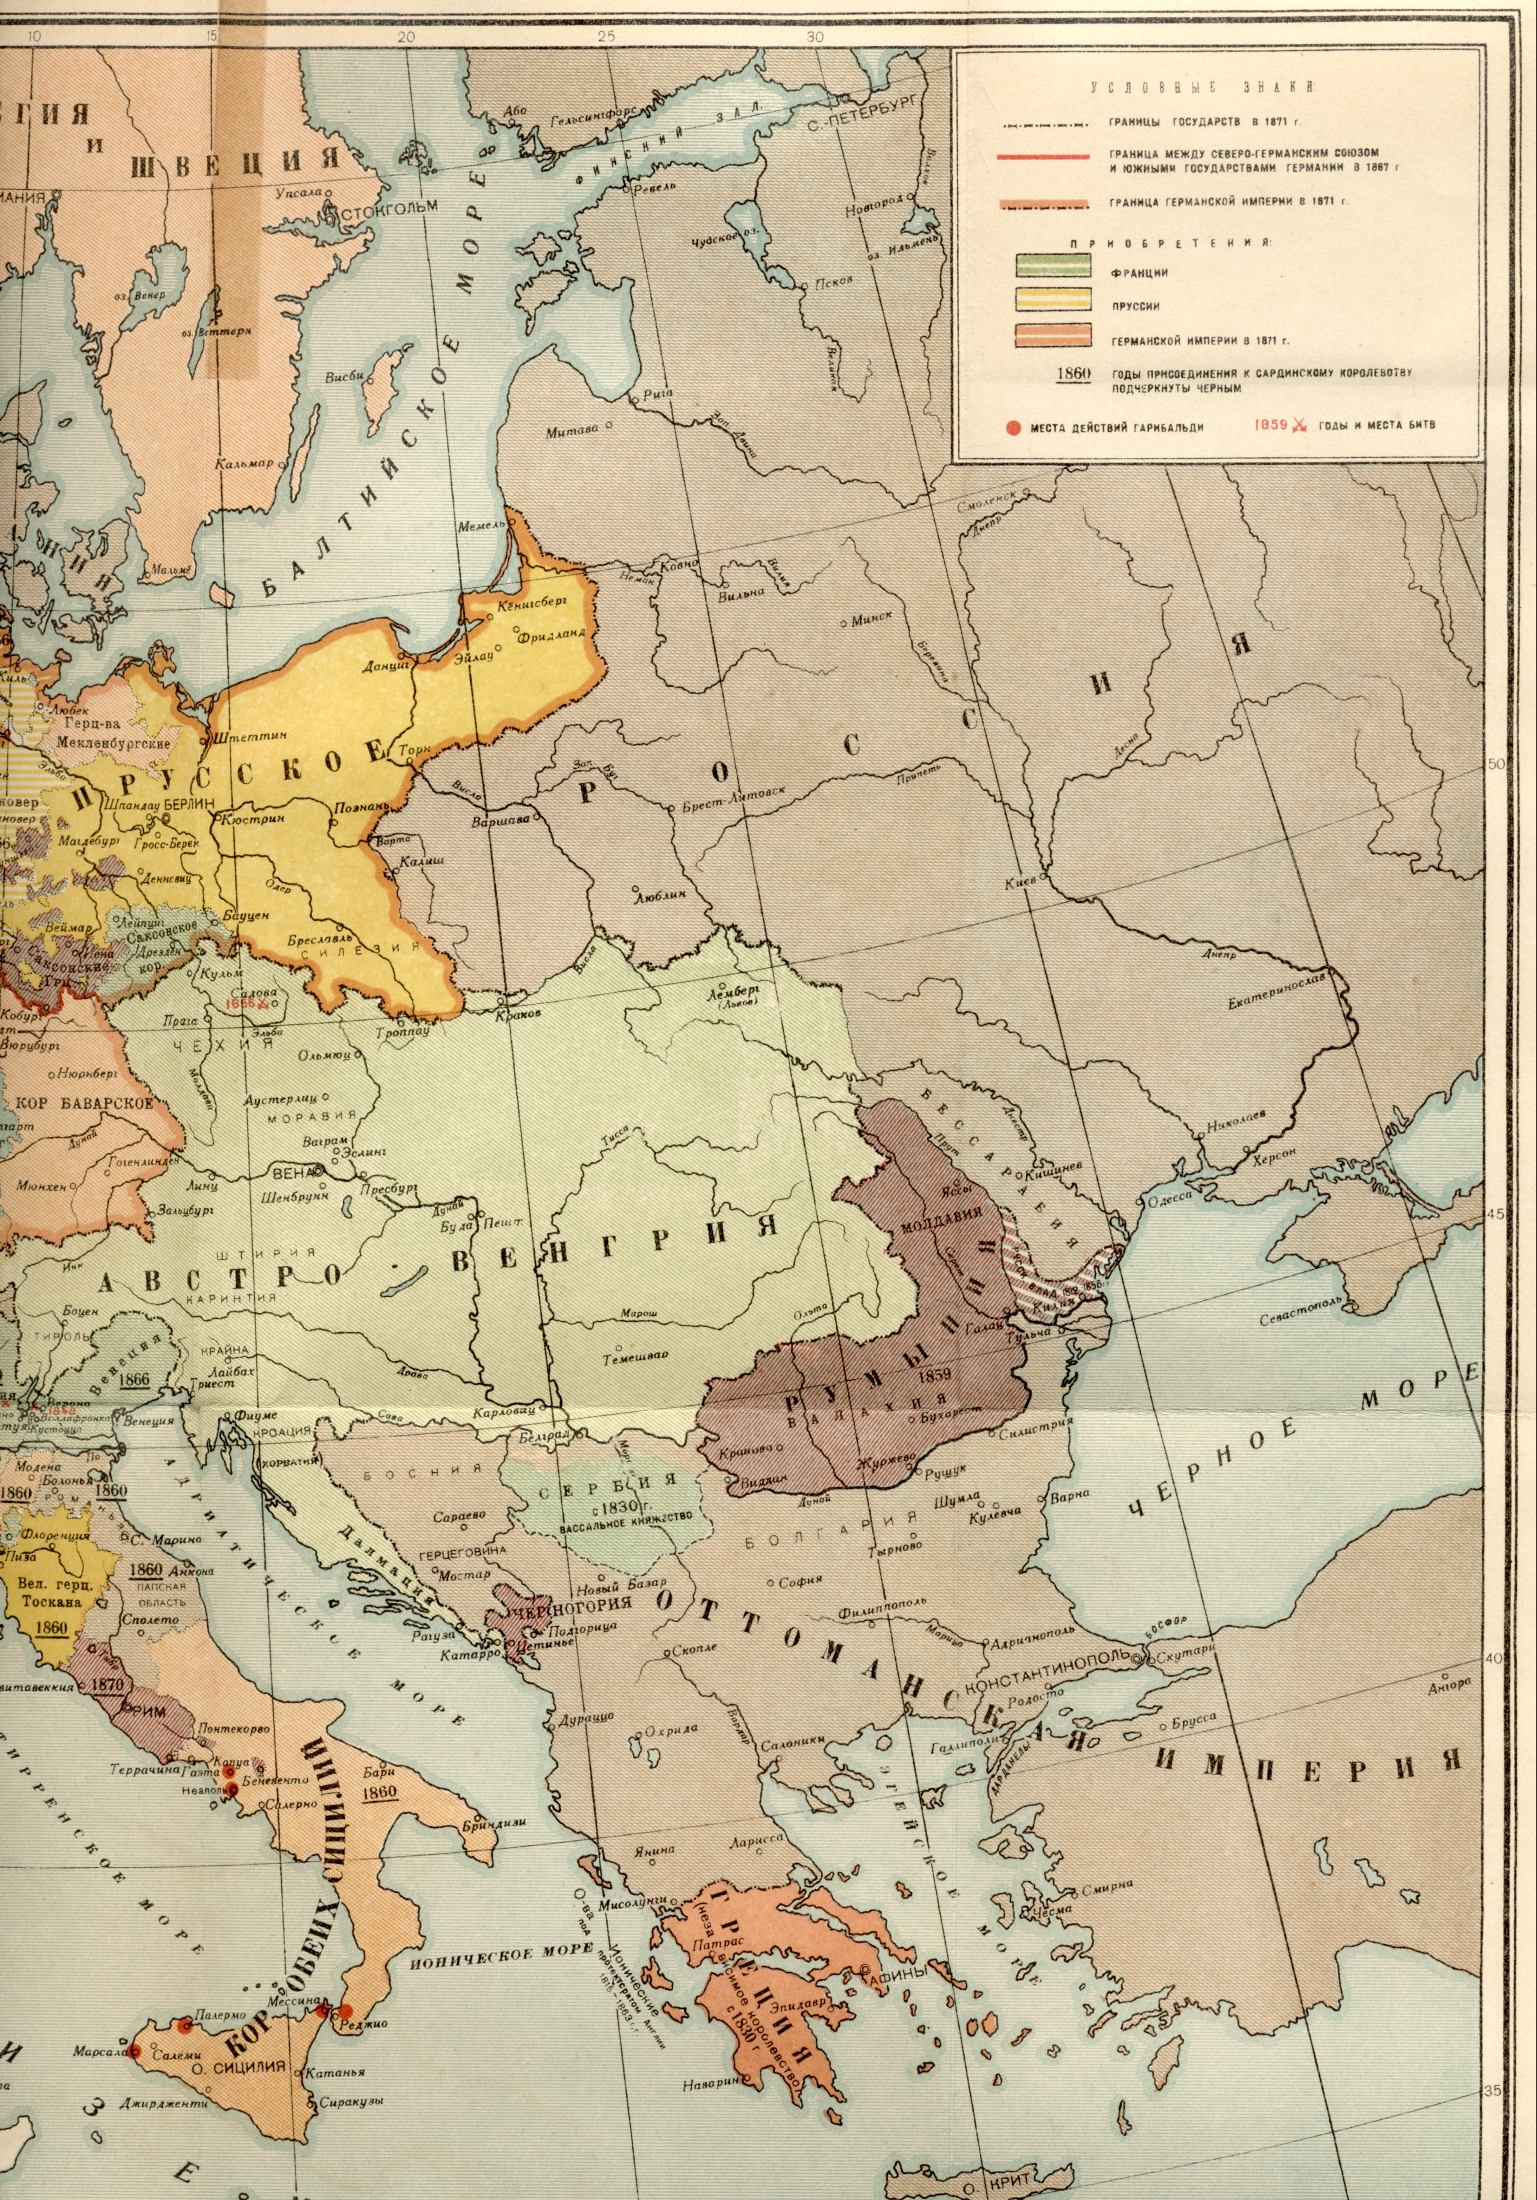 1871 год.Політіческая карта світу - карта Європи 1871 року - завершення об'єднання Італії і возз'єднання Німеччини, B0